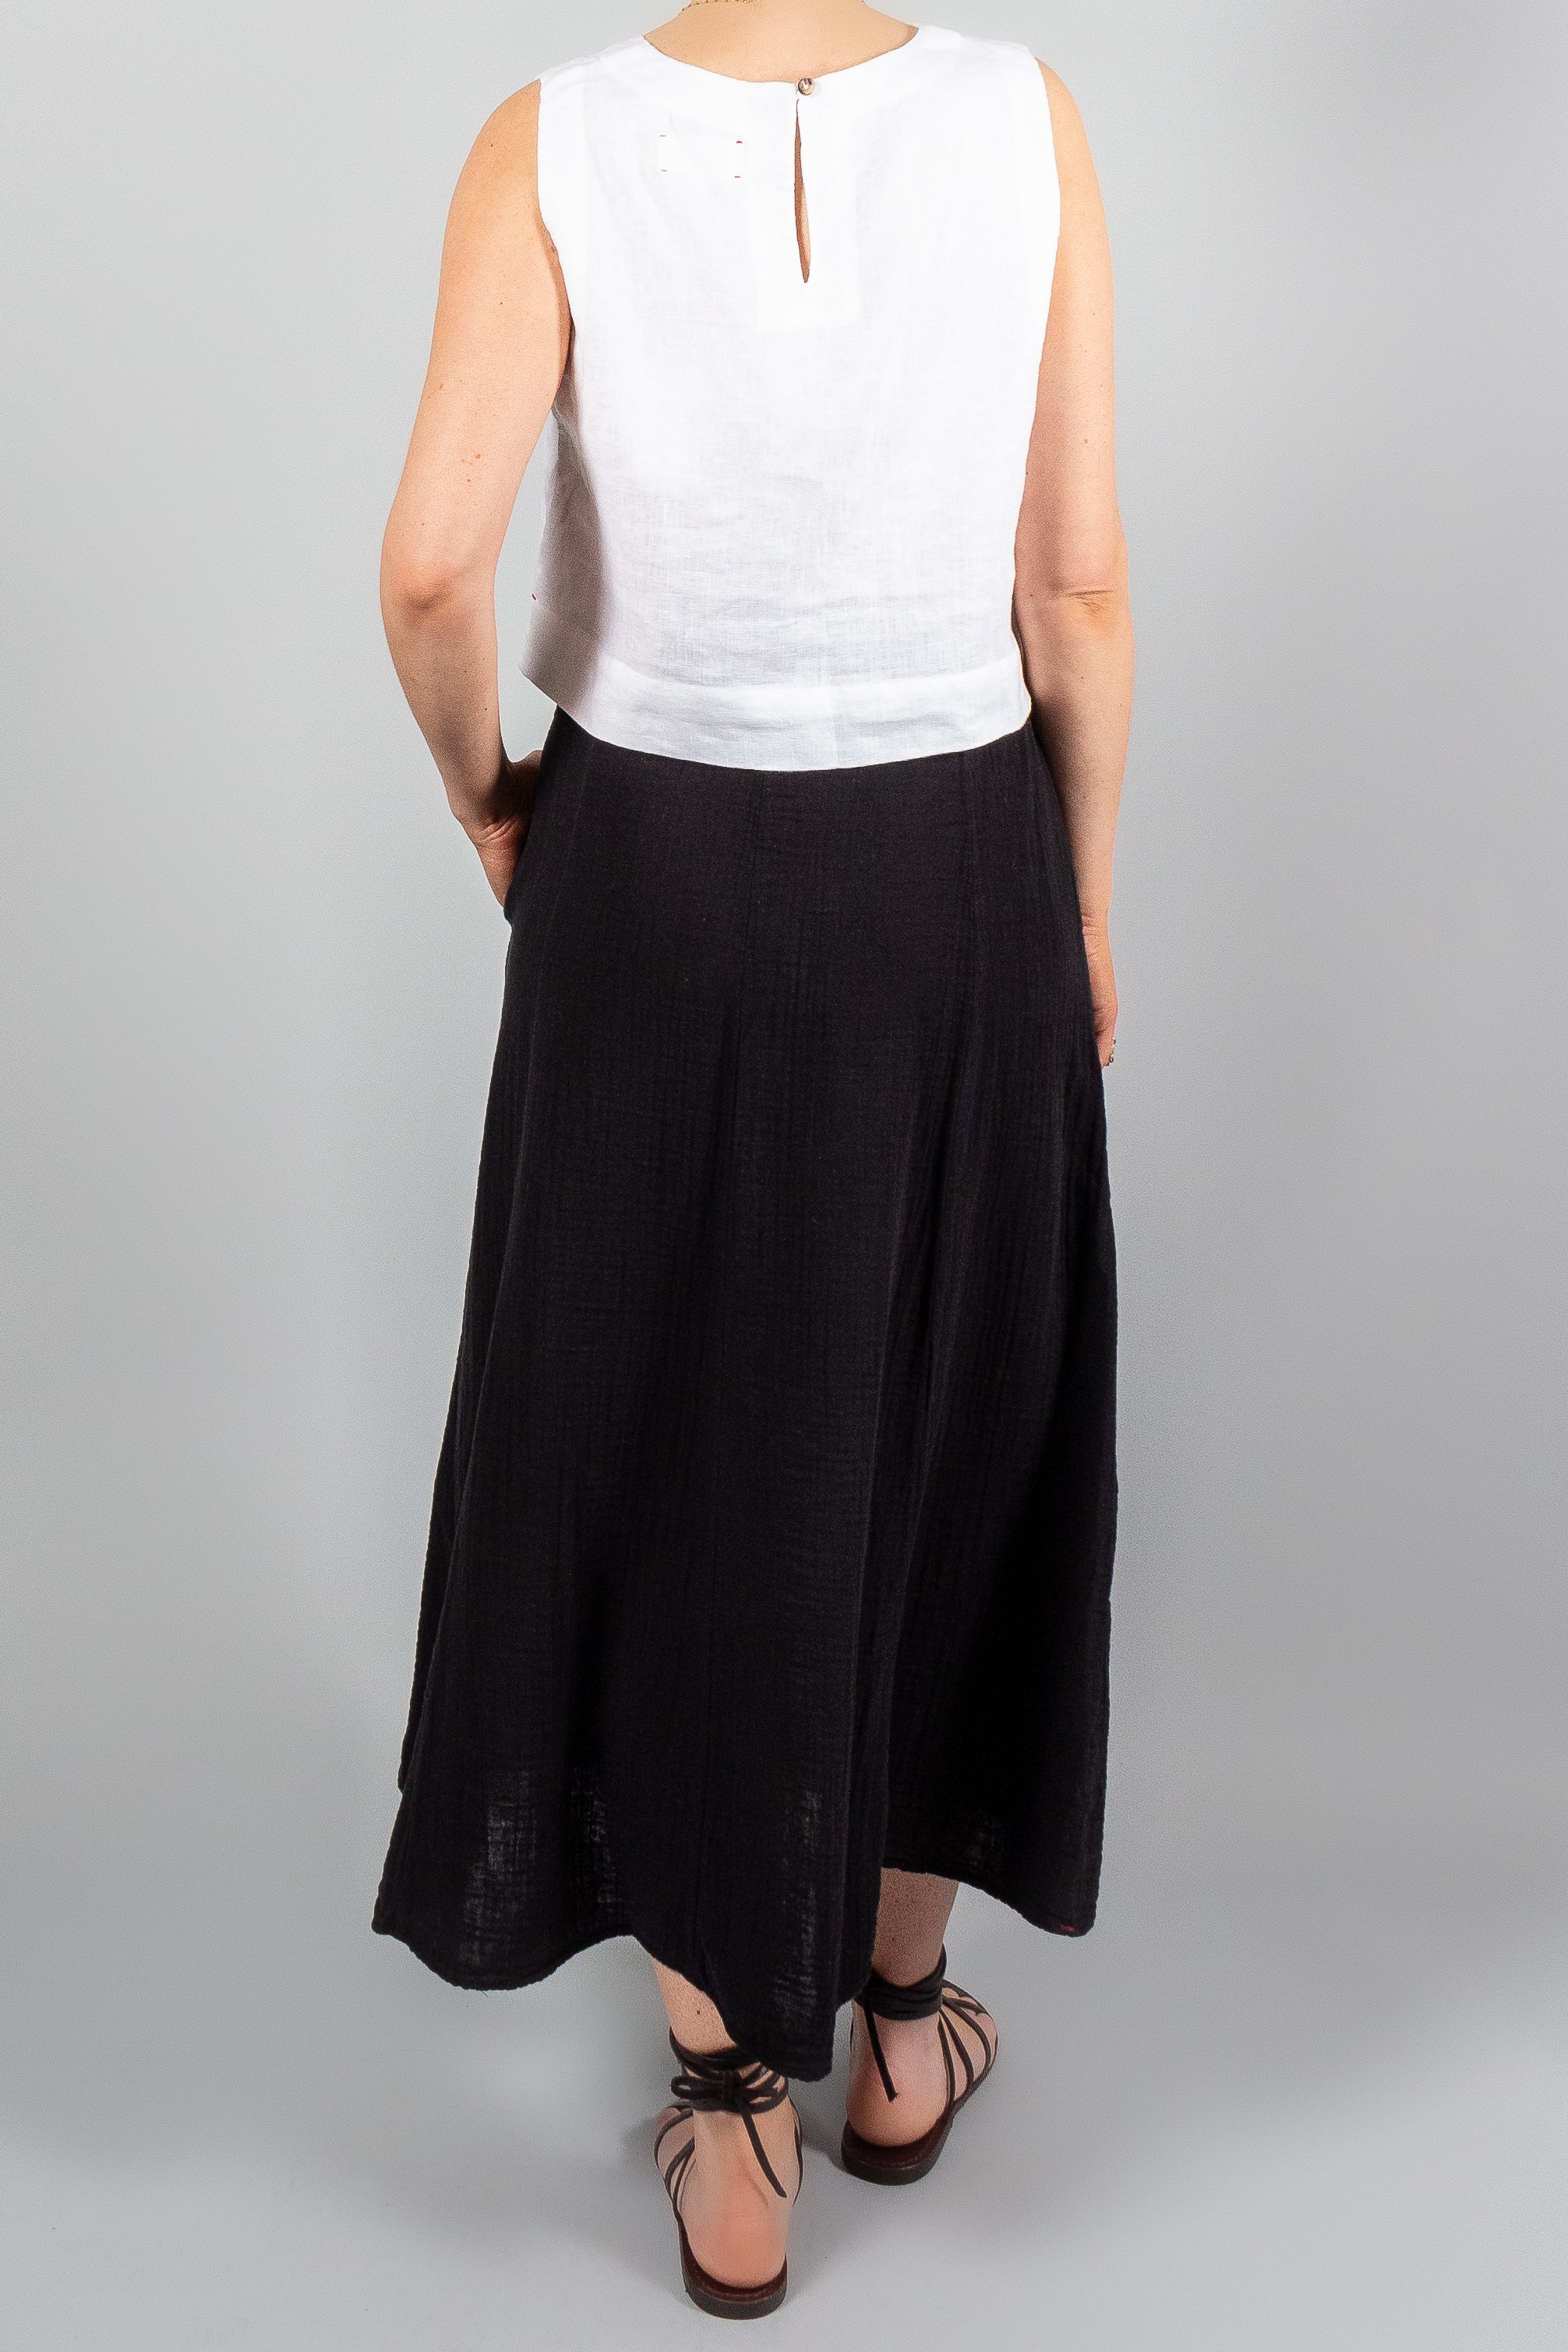 Xirena Deon Skirt-Skirts-Misch-Boutique-Vancouver-Canada-misch.ca